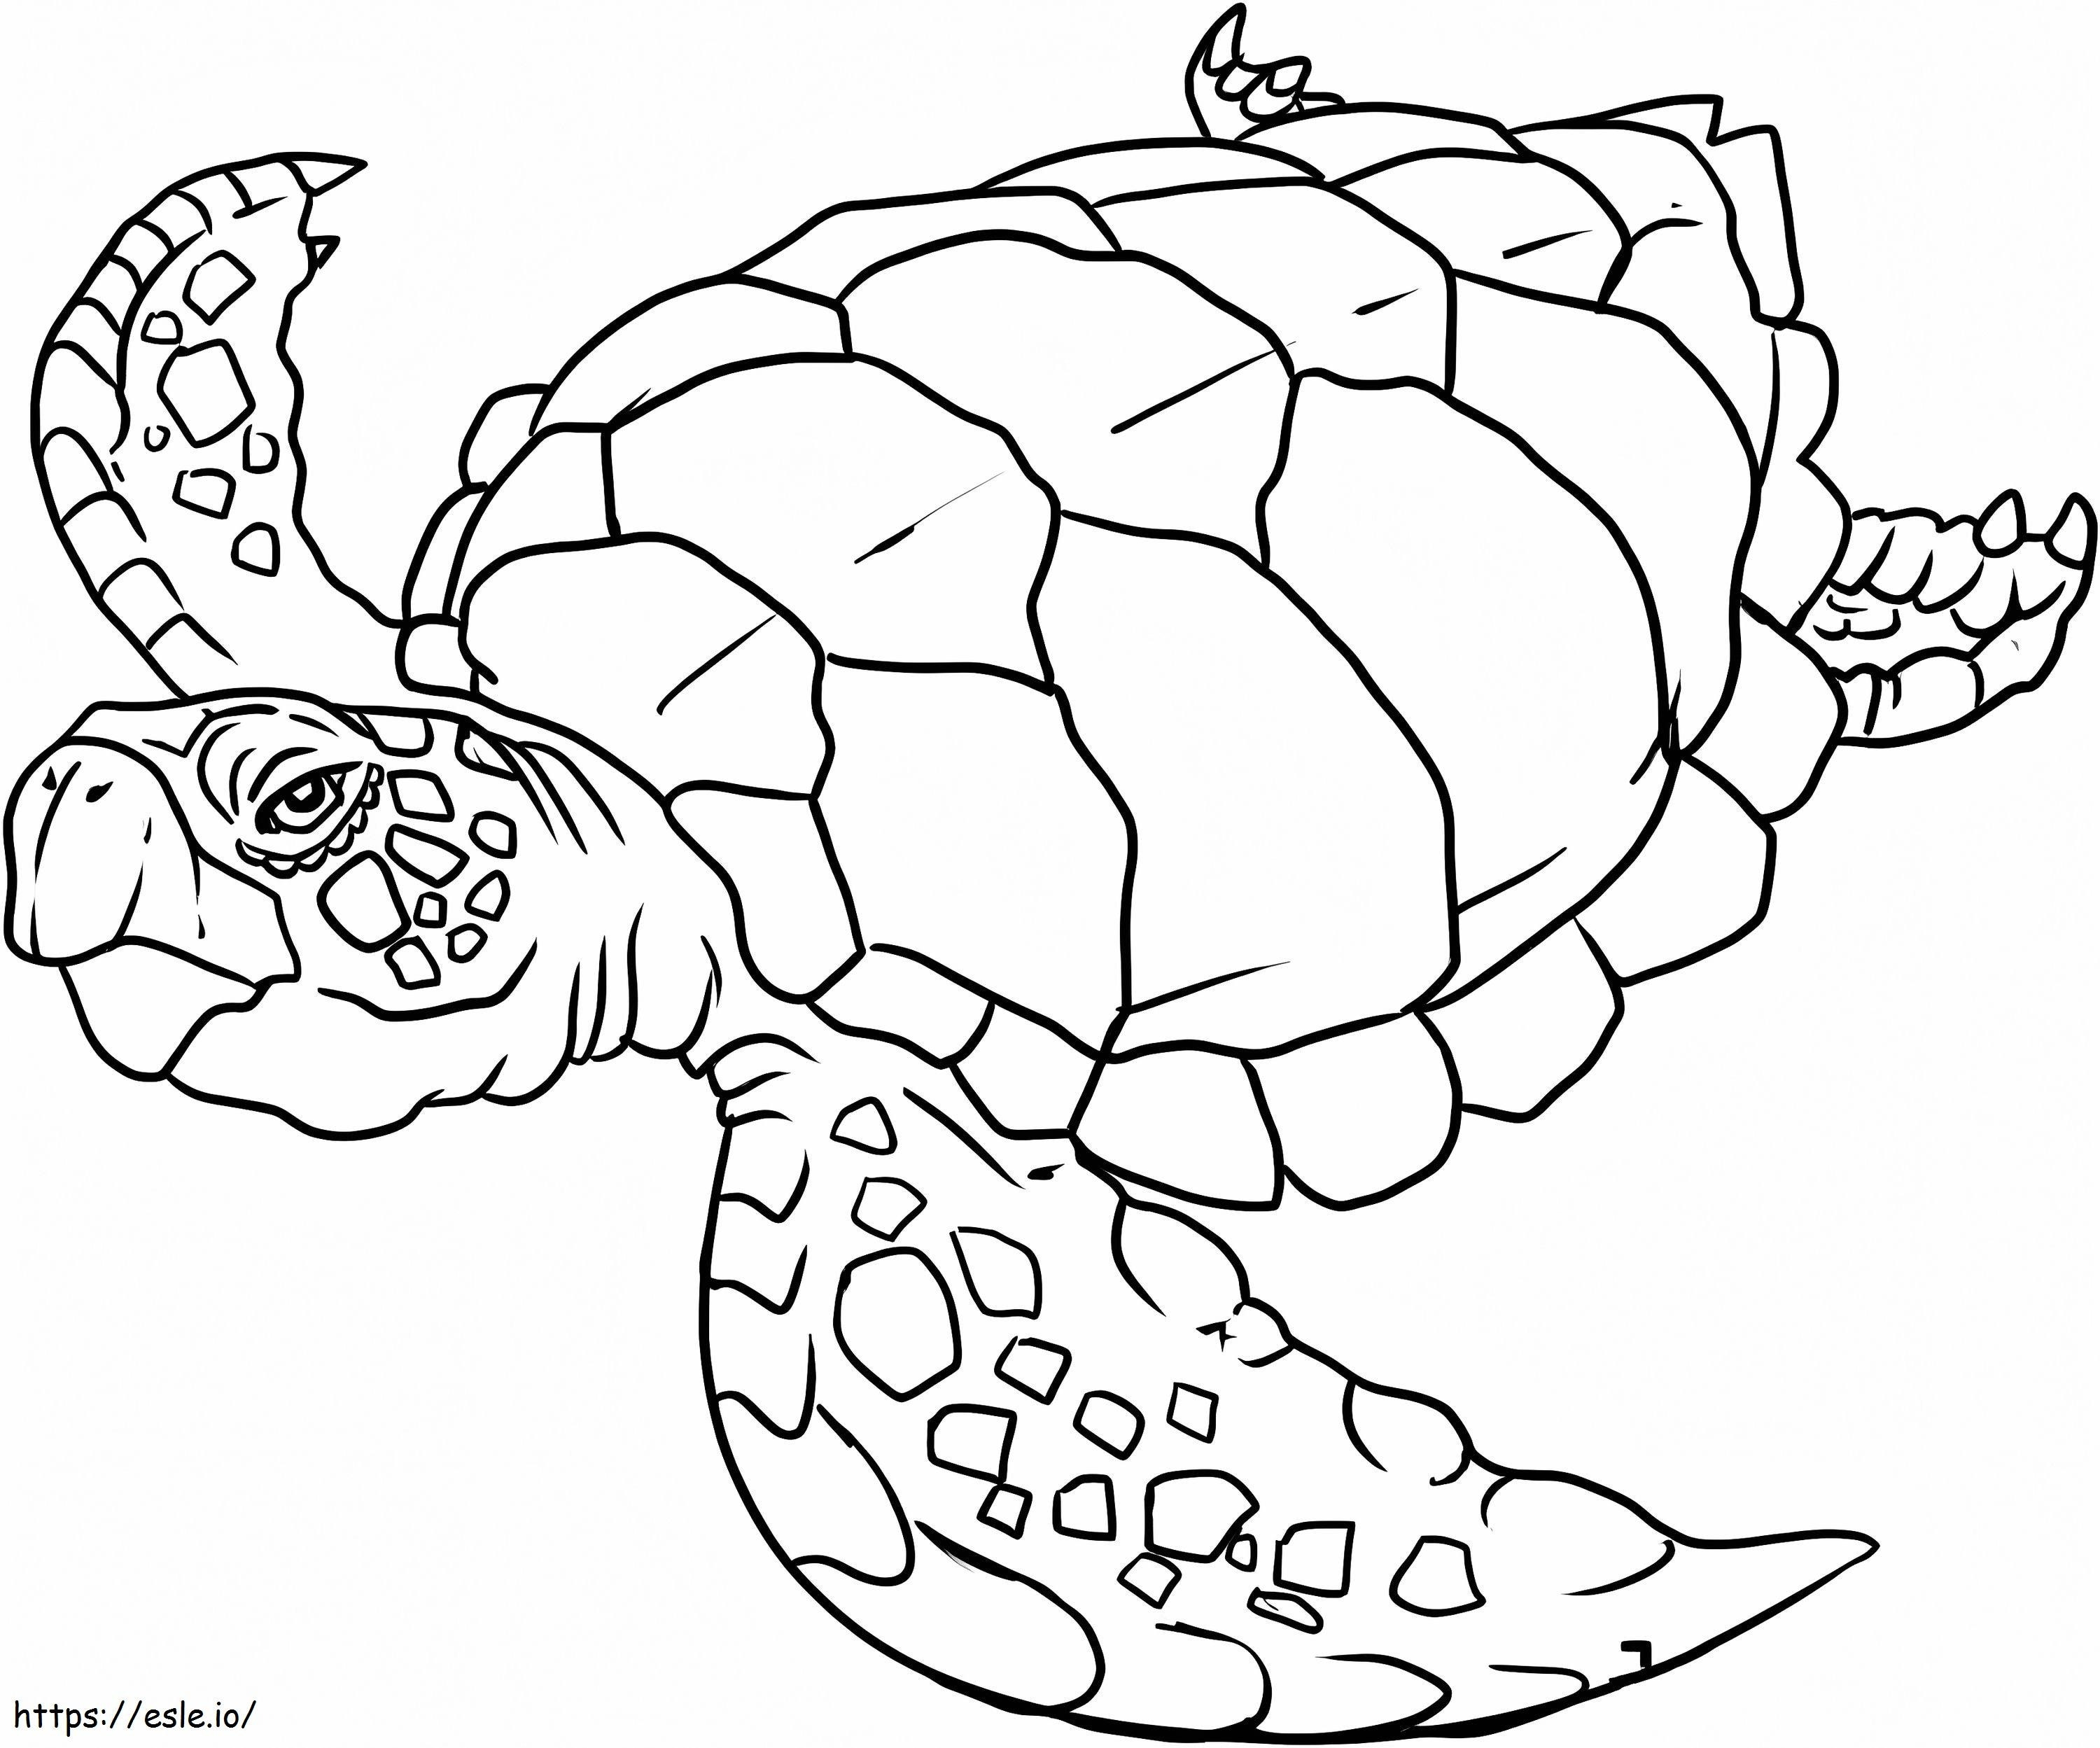 Schwimmende Schildkröte 1 ausmalbilder